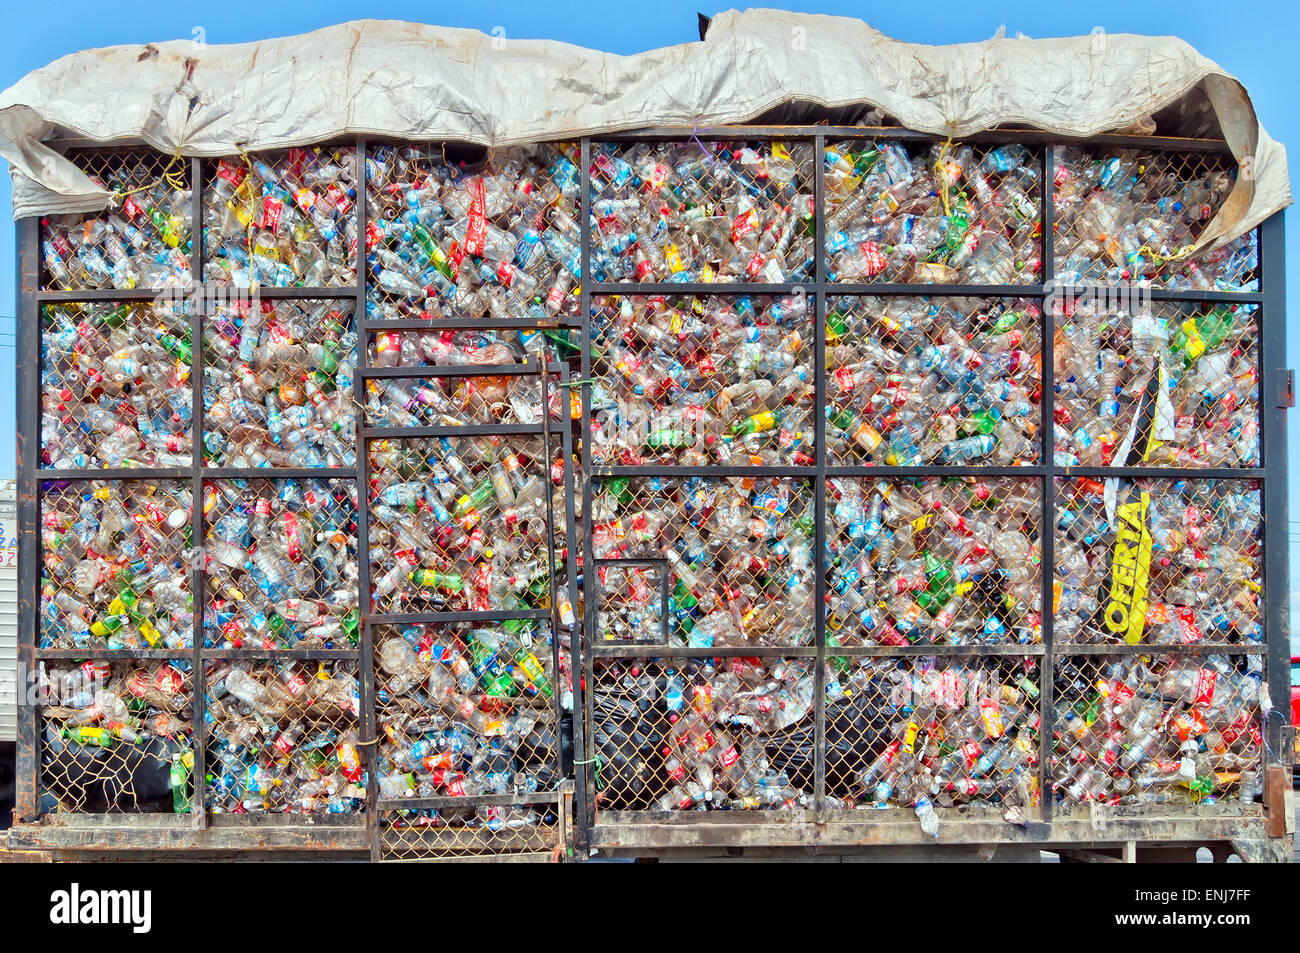 Isla Mujeres, Mexiko - 24. April 2014: Plastikflaschen liegen auf einem Haufen in einem Metallkäfig auf einem LKW in Isla Mujeres, Mexiko. Stockfoto